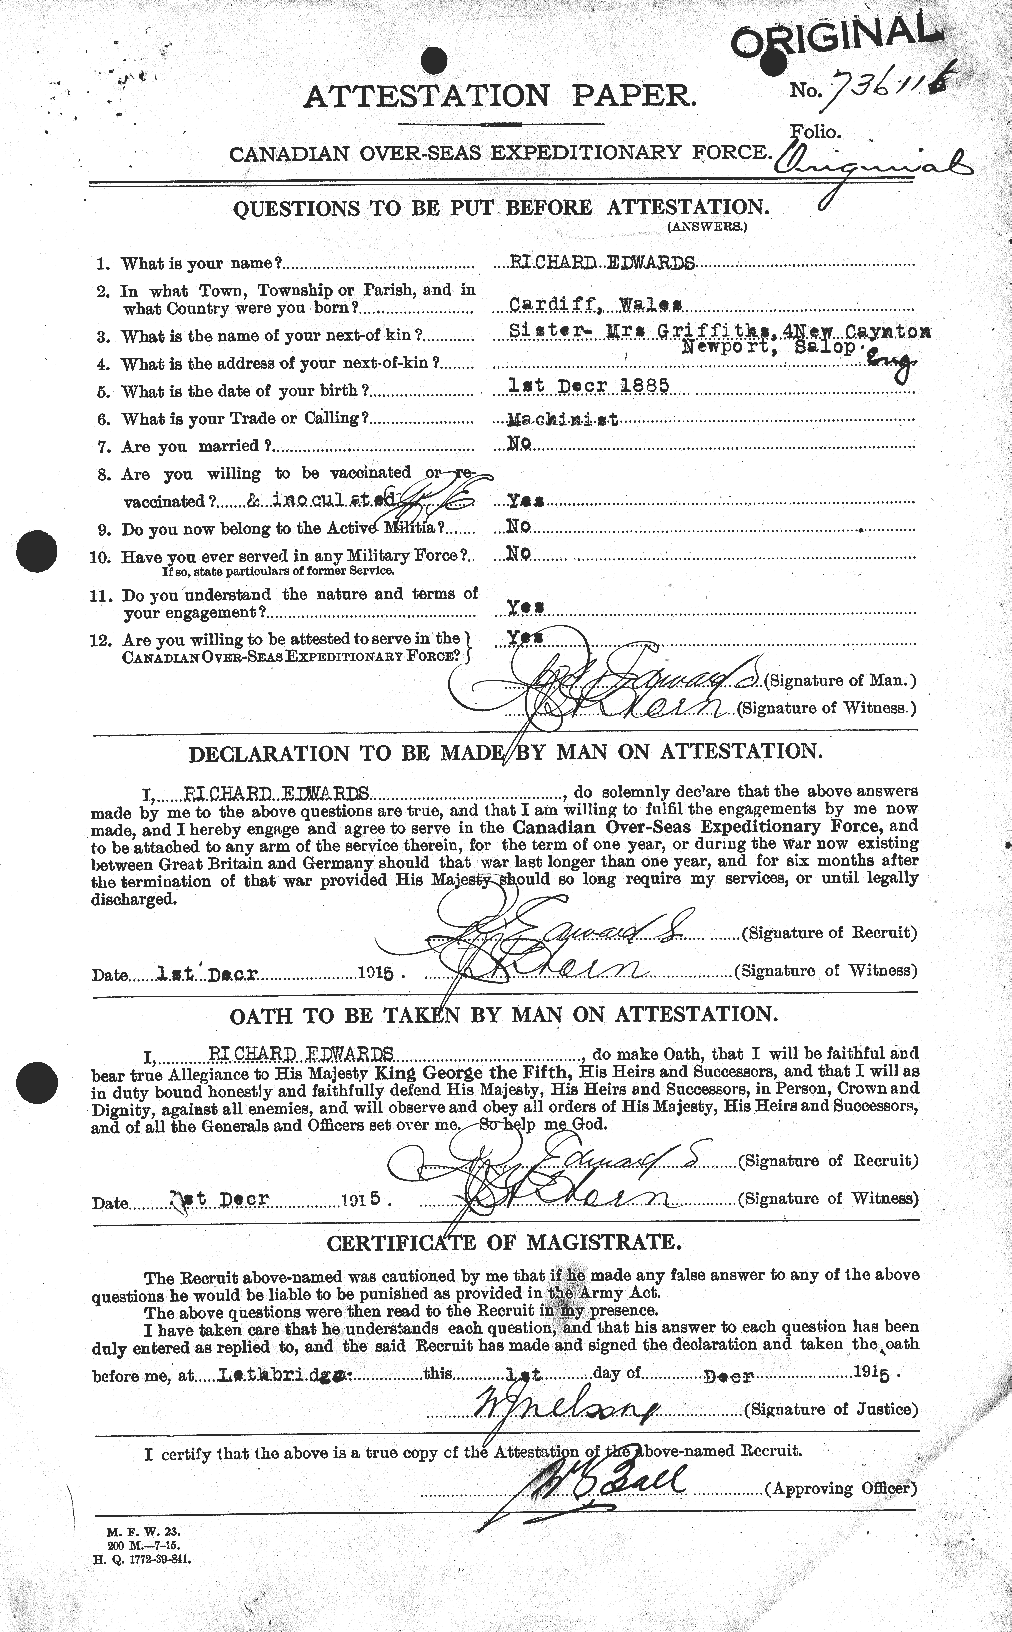 Dossiers du Personnel de la Première Guerre mondiale - CEC 310252a